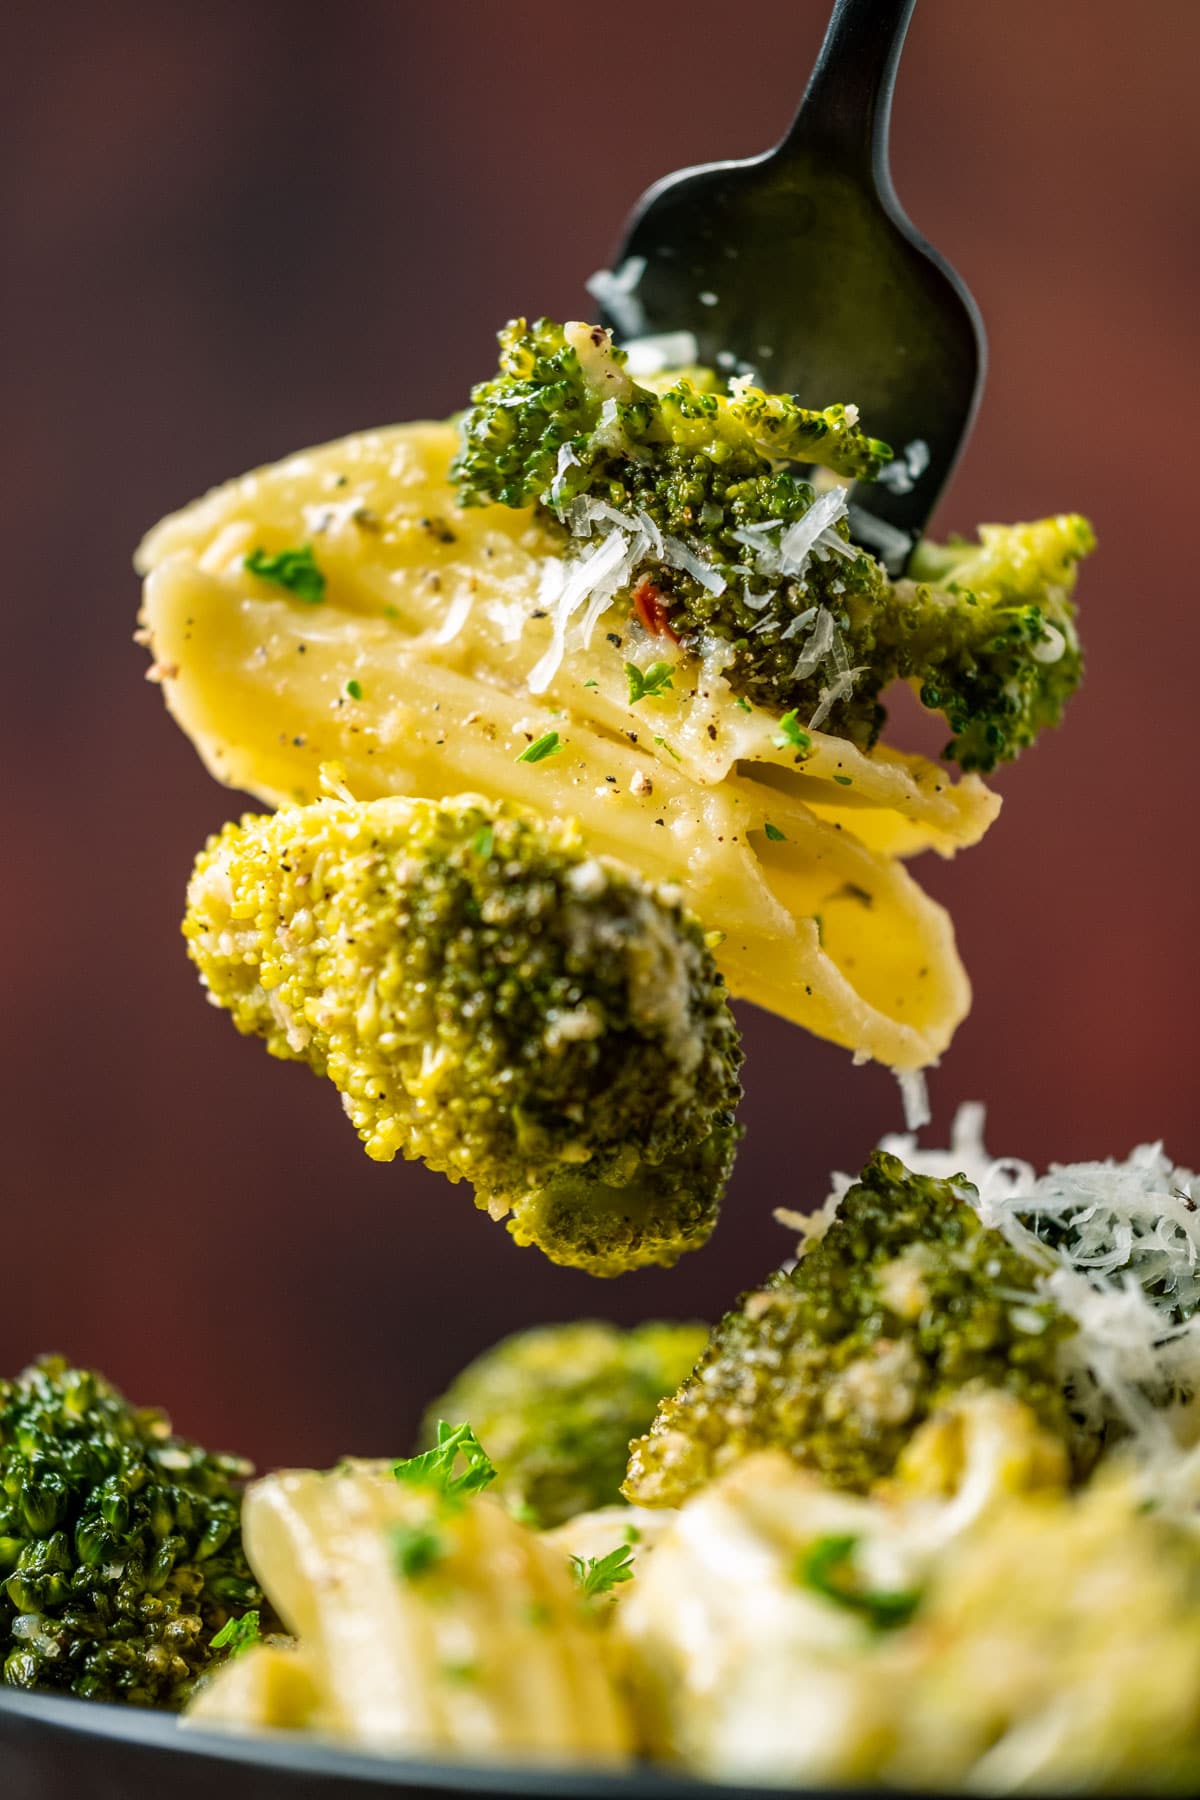 Forkful of vegan broccoli pasta.